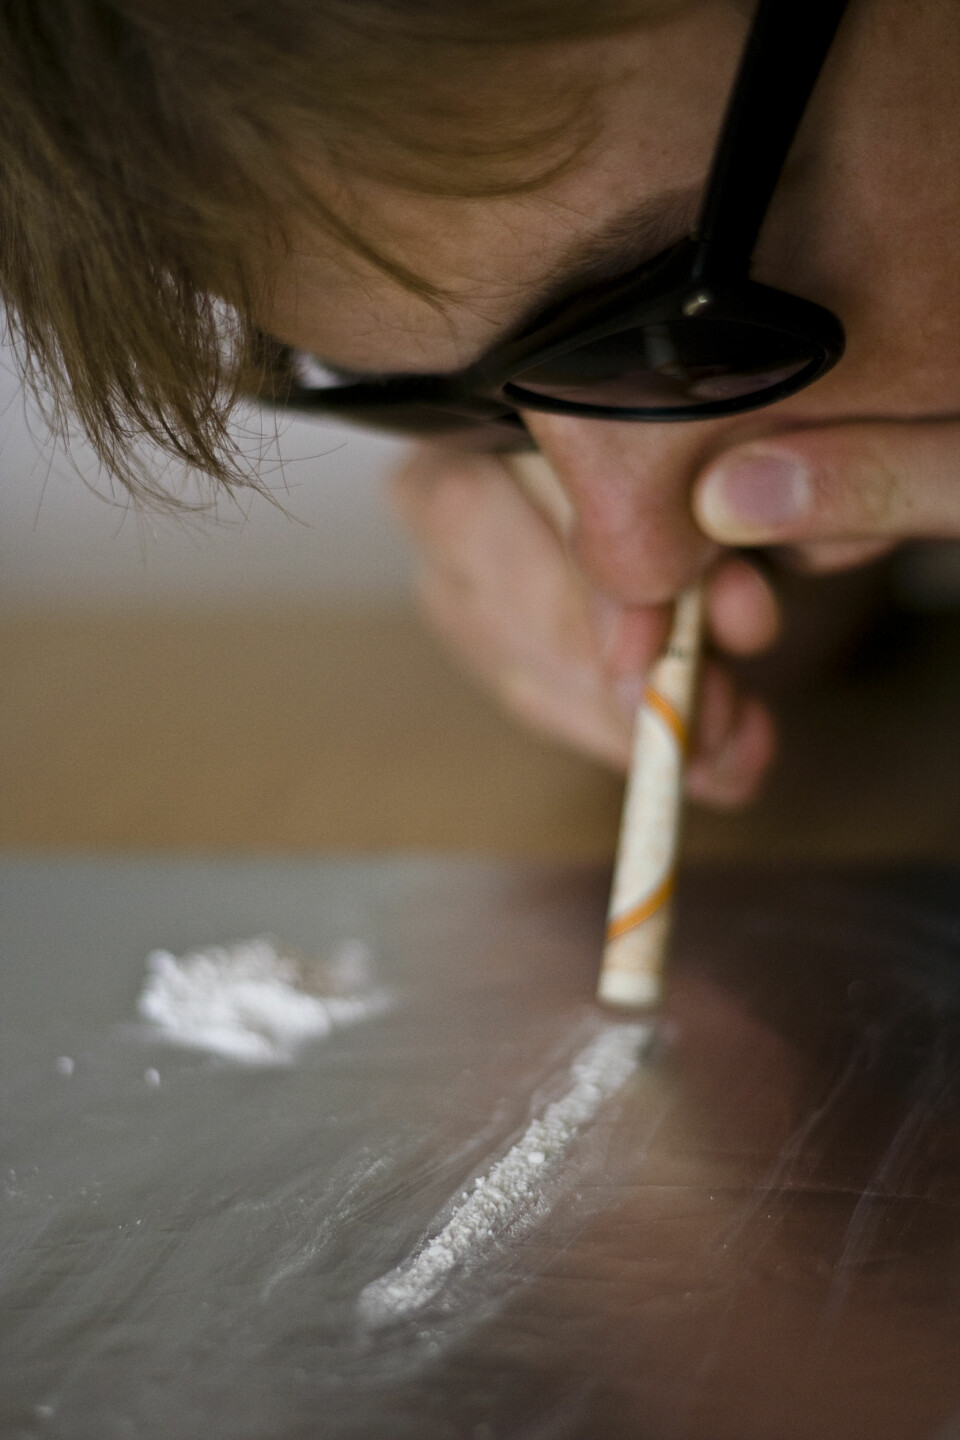 'Amfetamin er et av de vanligste illegale narkotiske stoffene i Norge, og ifølge Folkehelseinstituttet er antall beslag mer enn doblet de siste ti årene. (Illustrasjonsfoto: www.colourbox.no)'